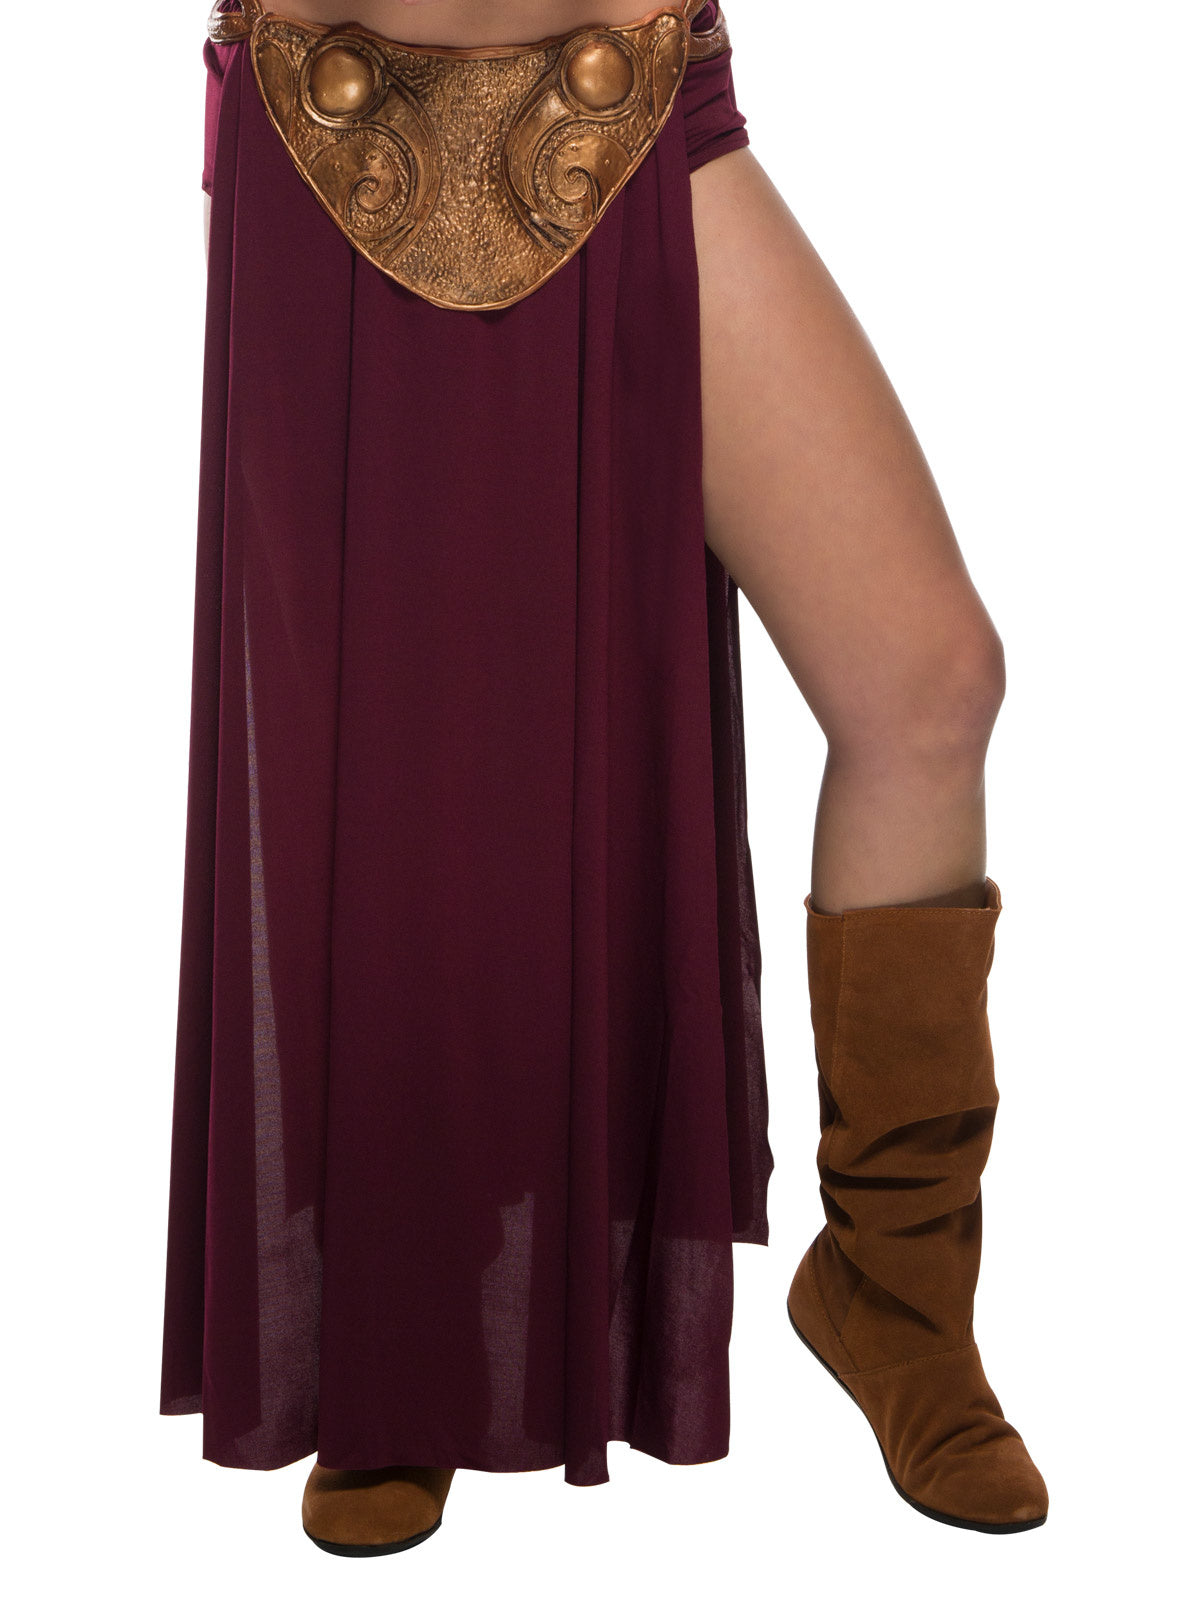 Princess Leia: Slave Leia Outfit  For Women